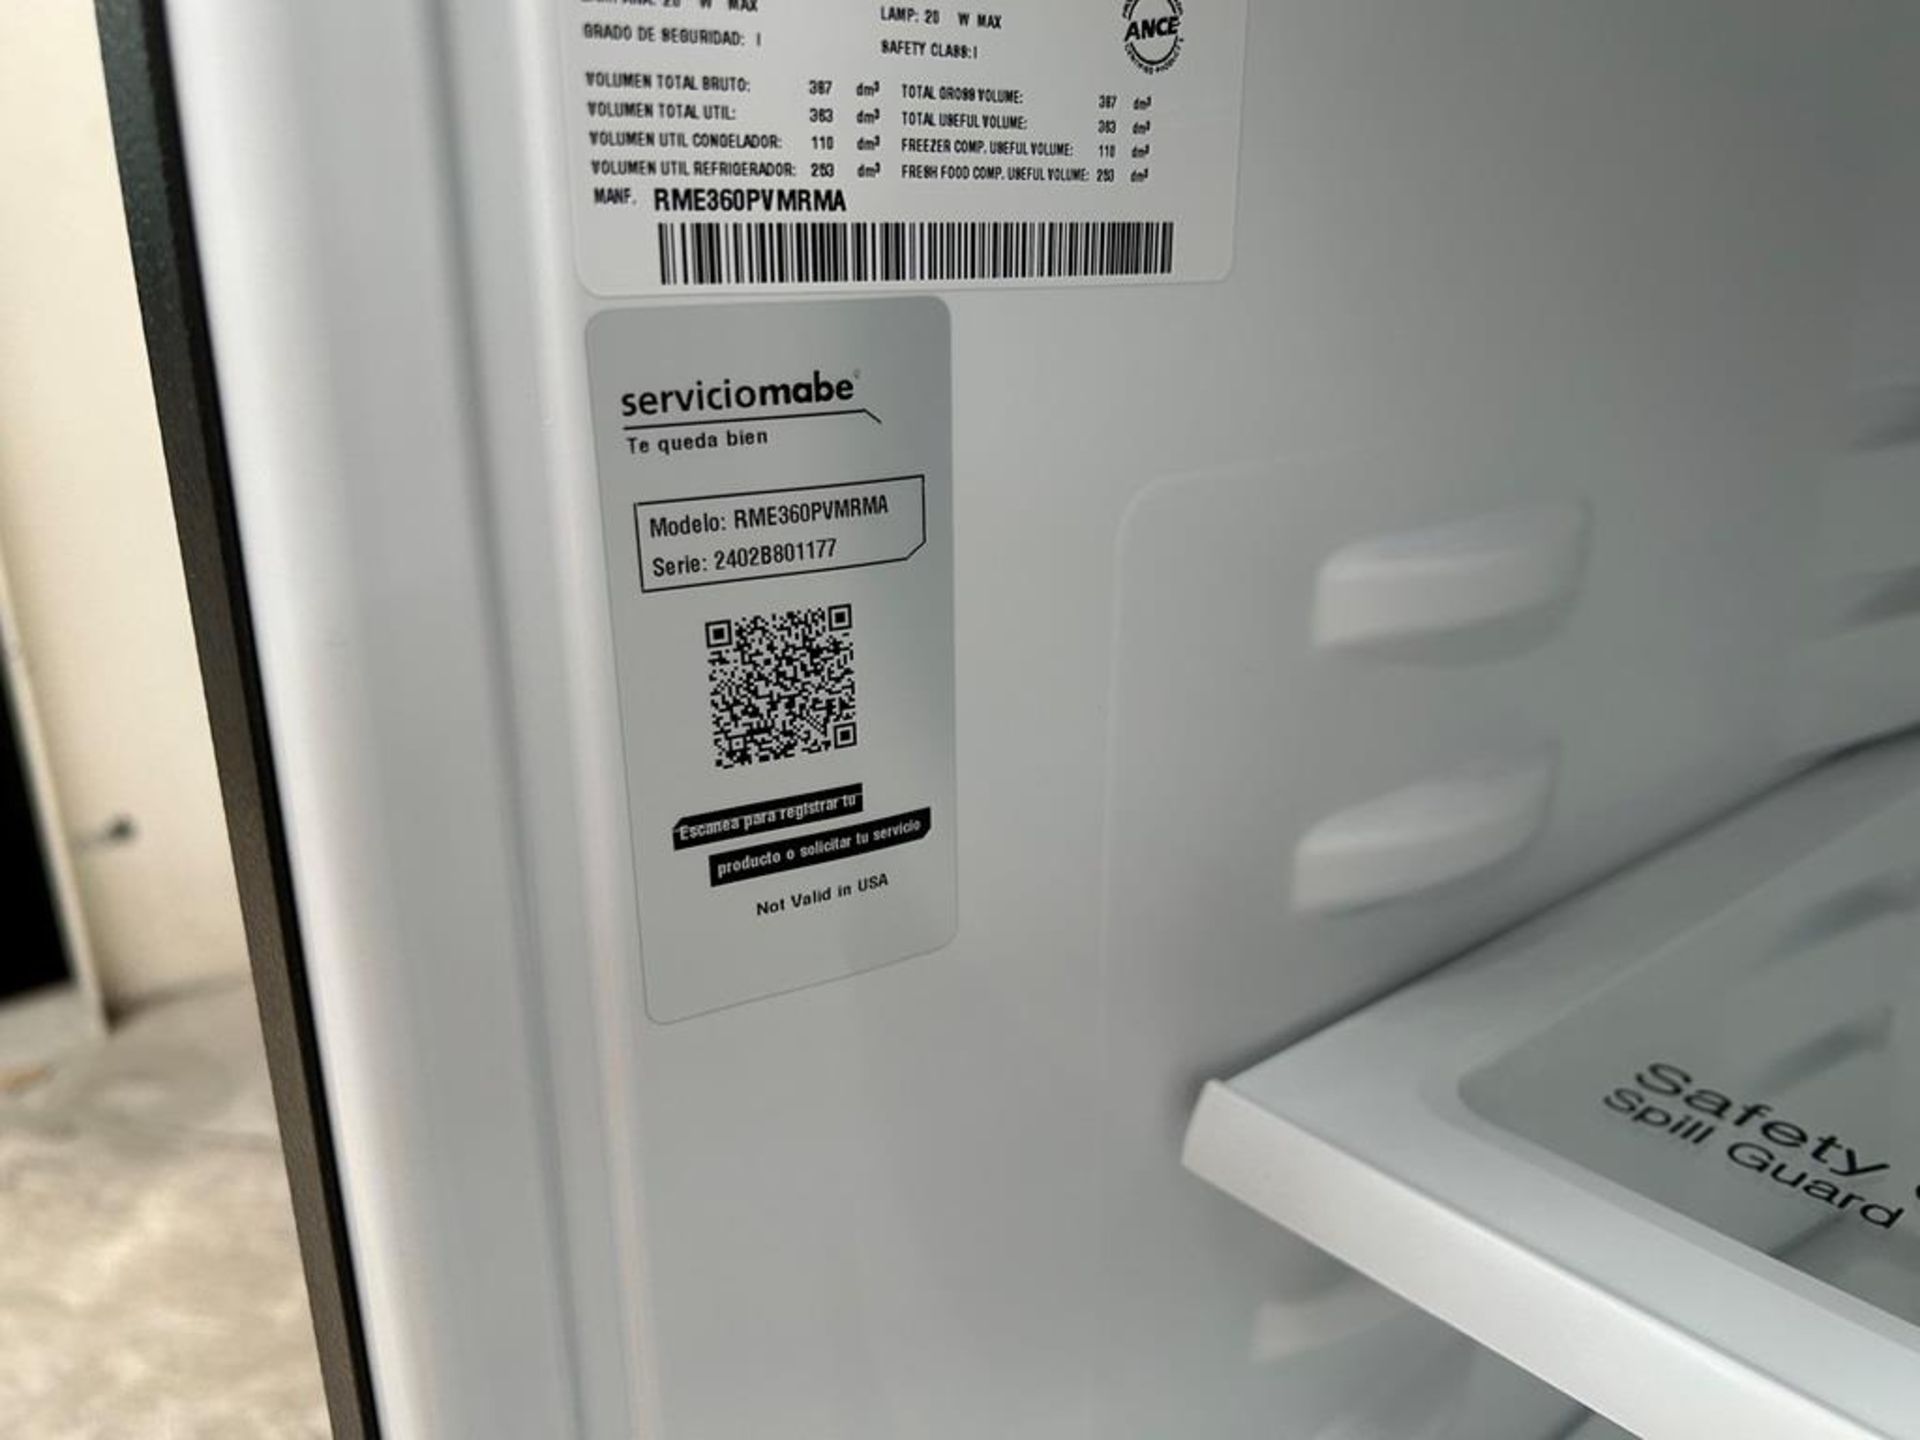 Lote de 2 refrigeradores contiene: 1 Refrigerador Marca MABE, Modelo RME360PVMRM0, Serie 01177, Col - Image 9 of 18